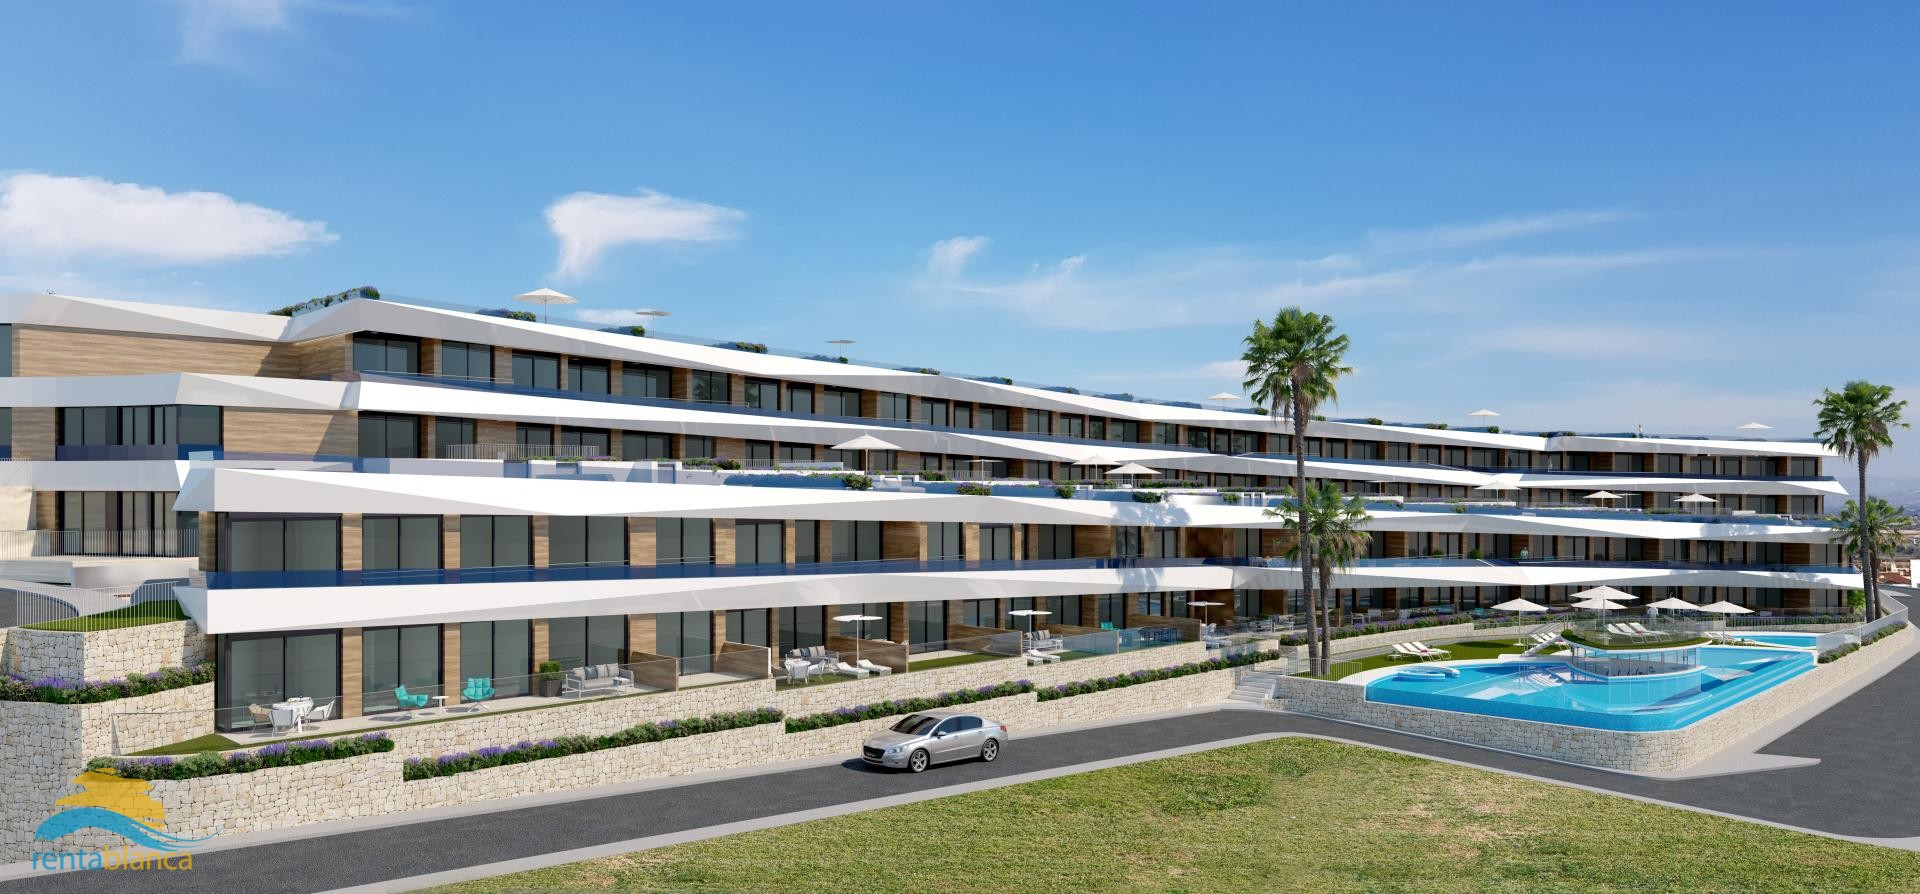 Nieuwbouw - wooncomplex 76 appartementen - Gran Alacant  - Rentablanca